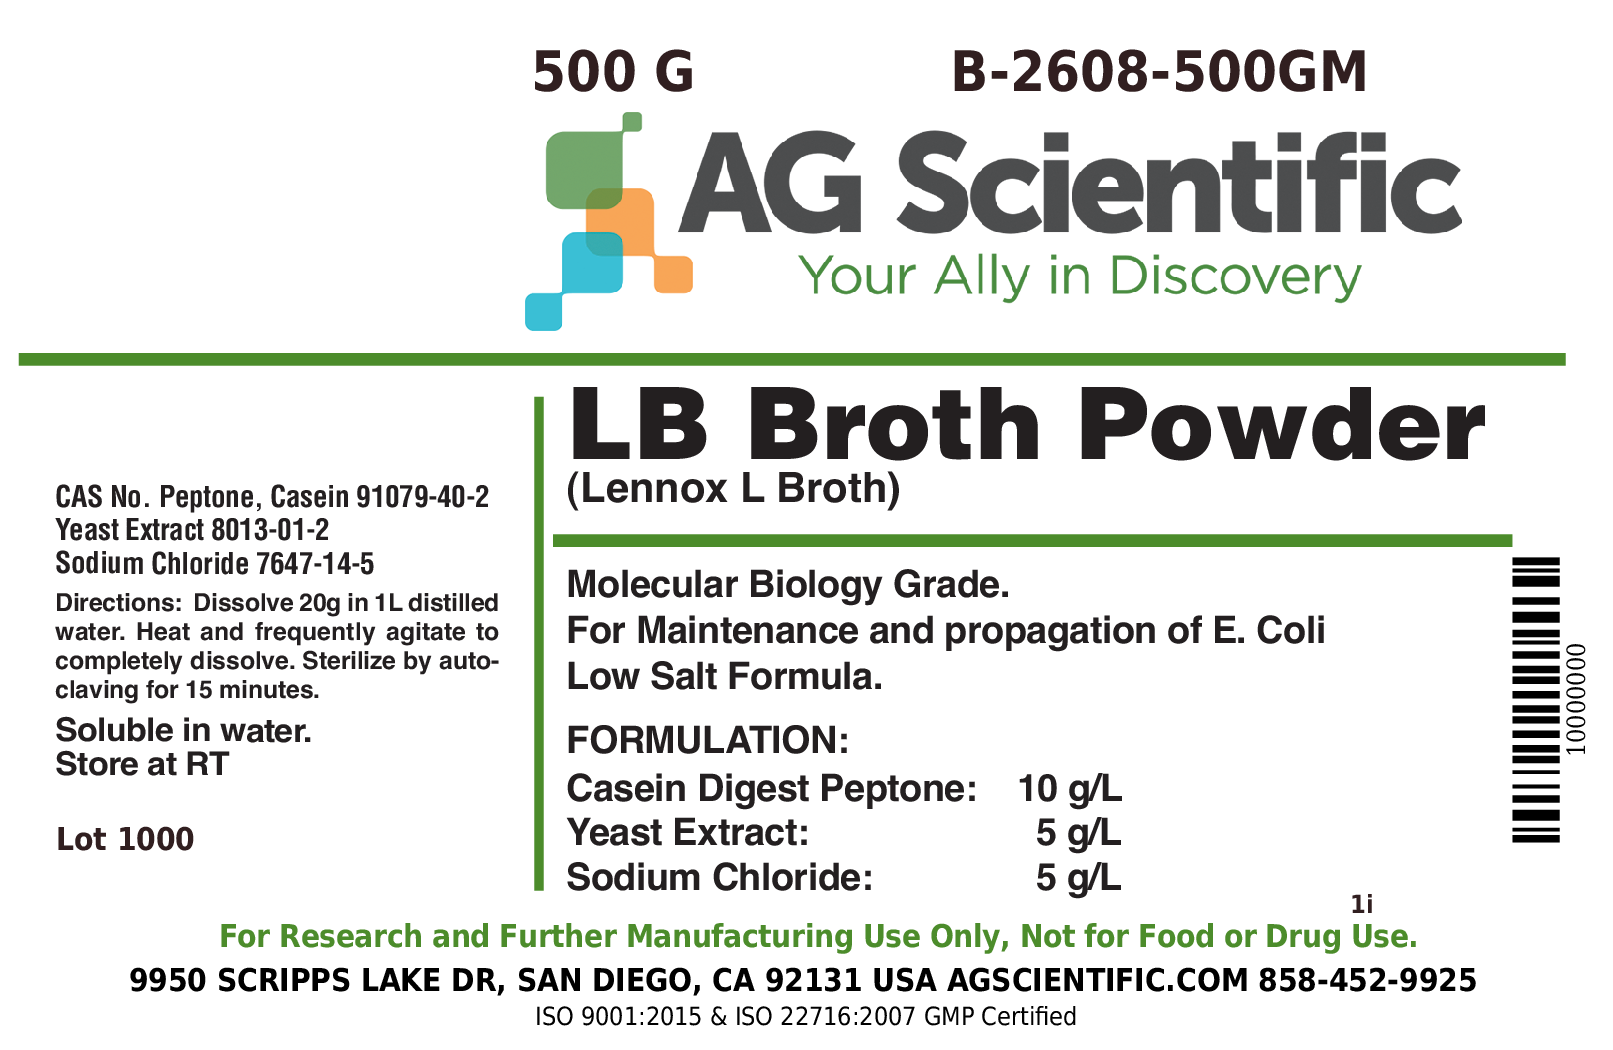 LB Broth [Lennox L Broth], Powder, 500 G